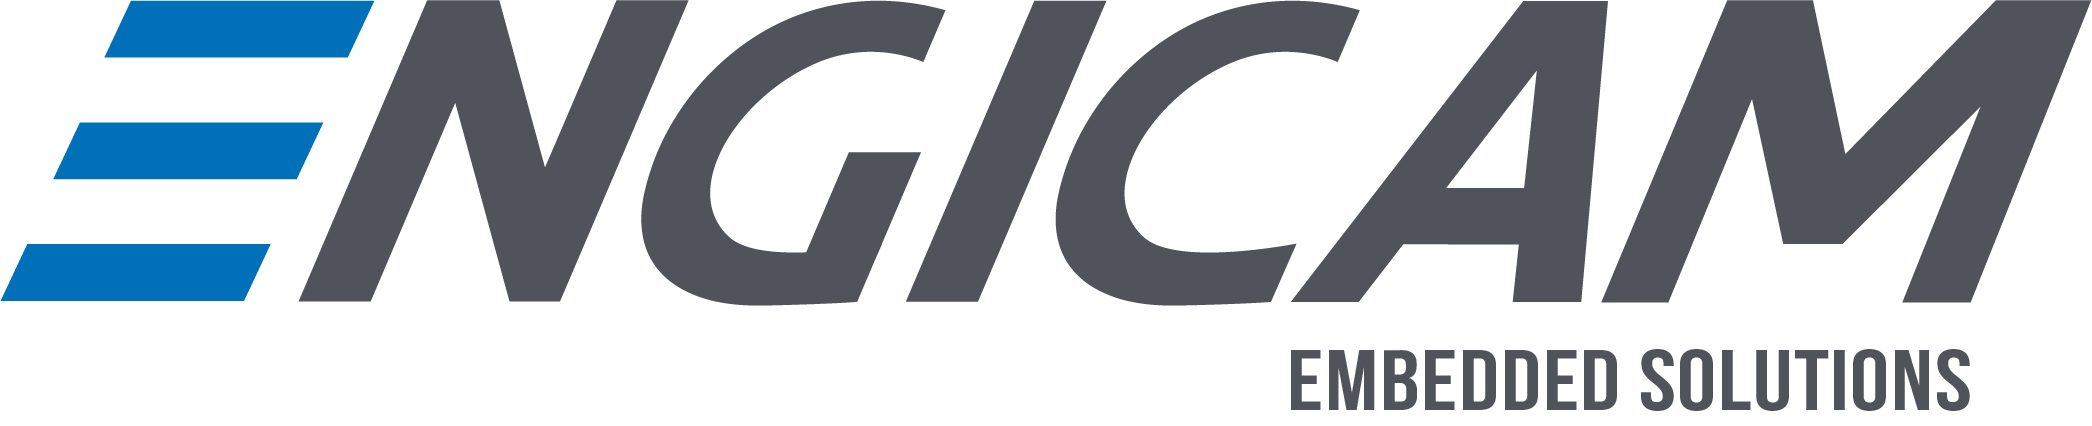 ENGICAM logo